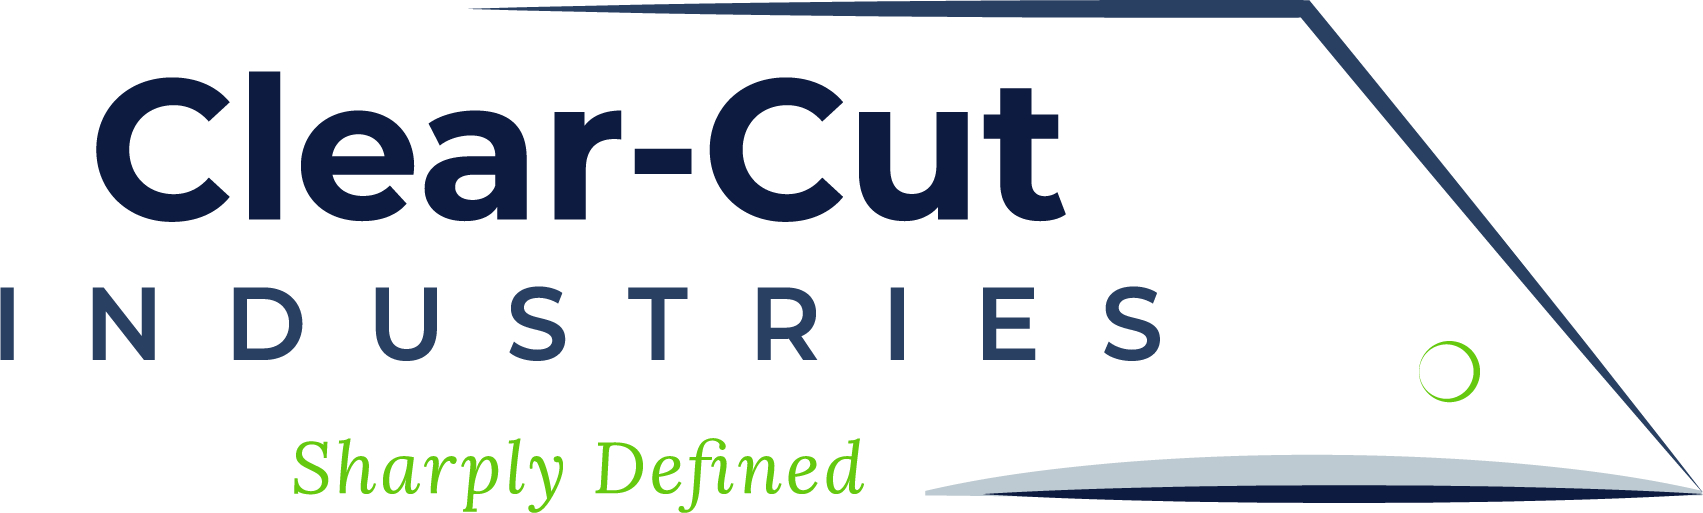 Clear-Cut Industries